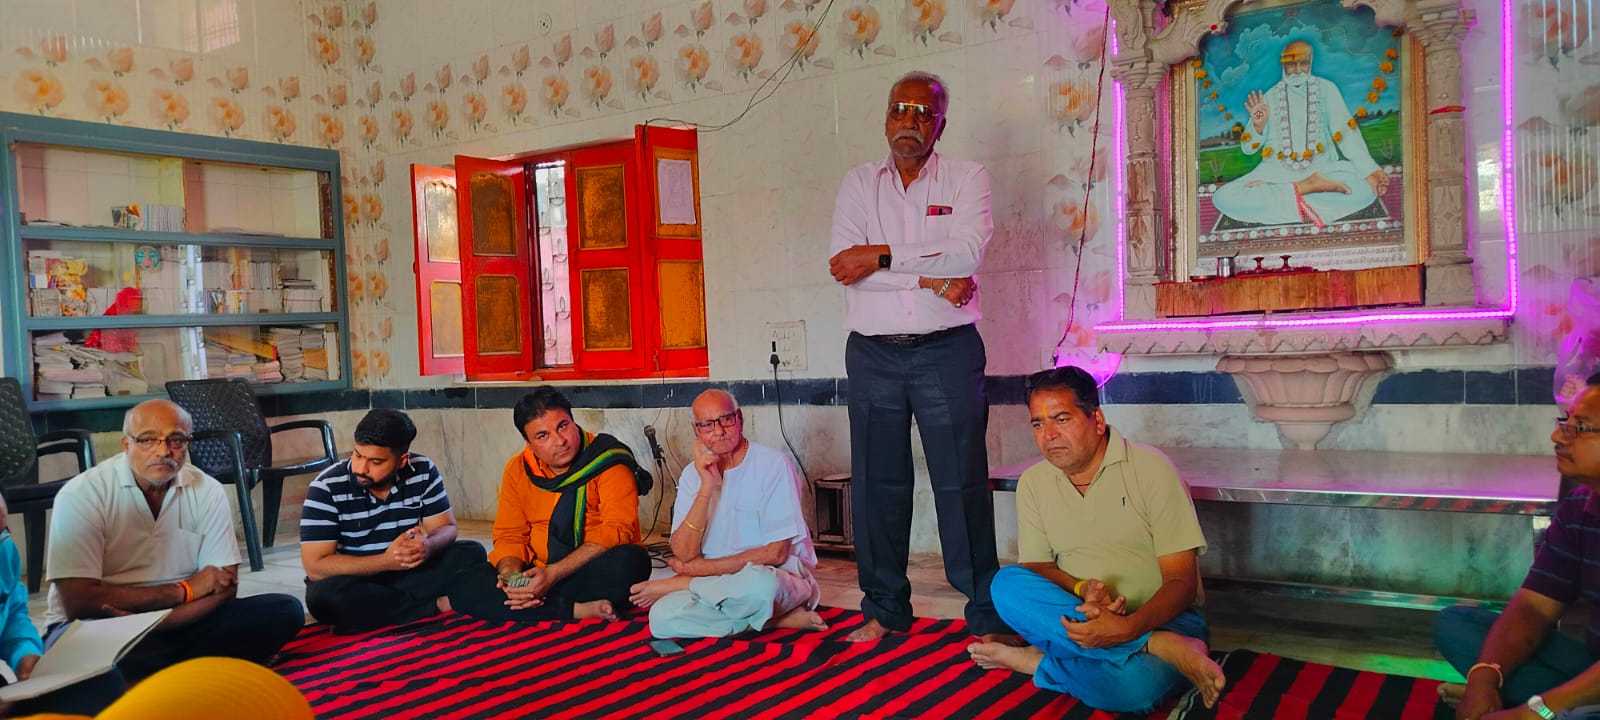 विशनागर ओदिच्य ब्राह्मण समाज बांसवाड़ा का एक दिवसीय प्रशिक्षण शिविर संपन्न